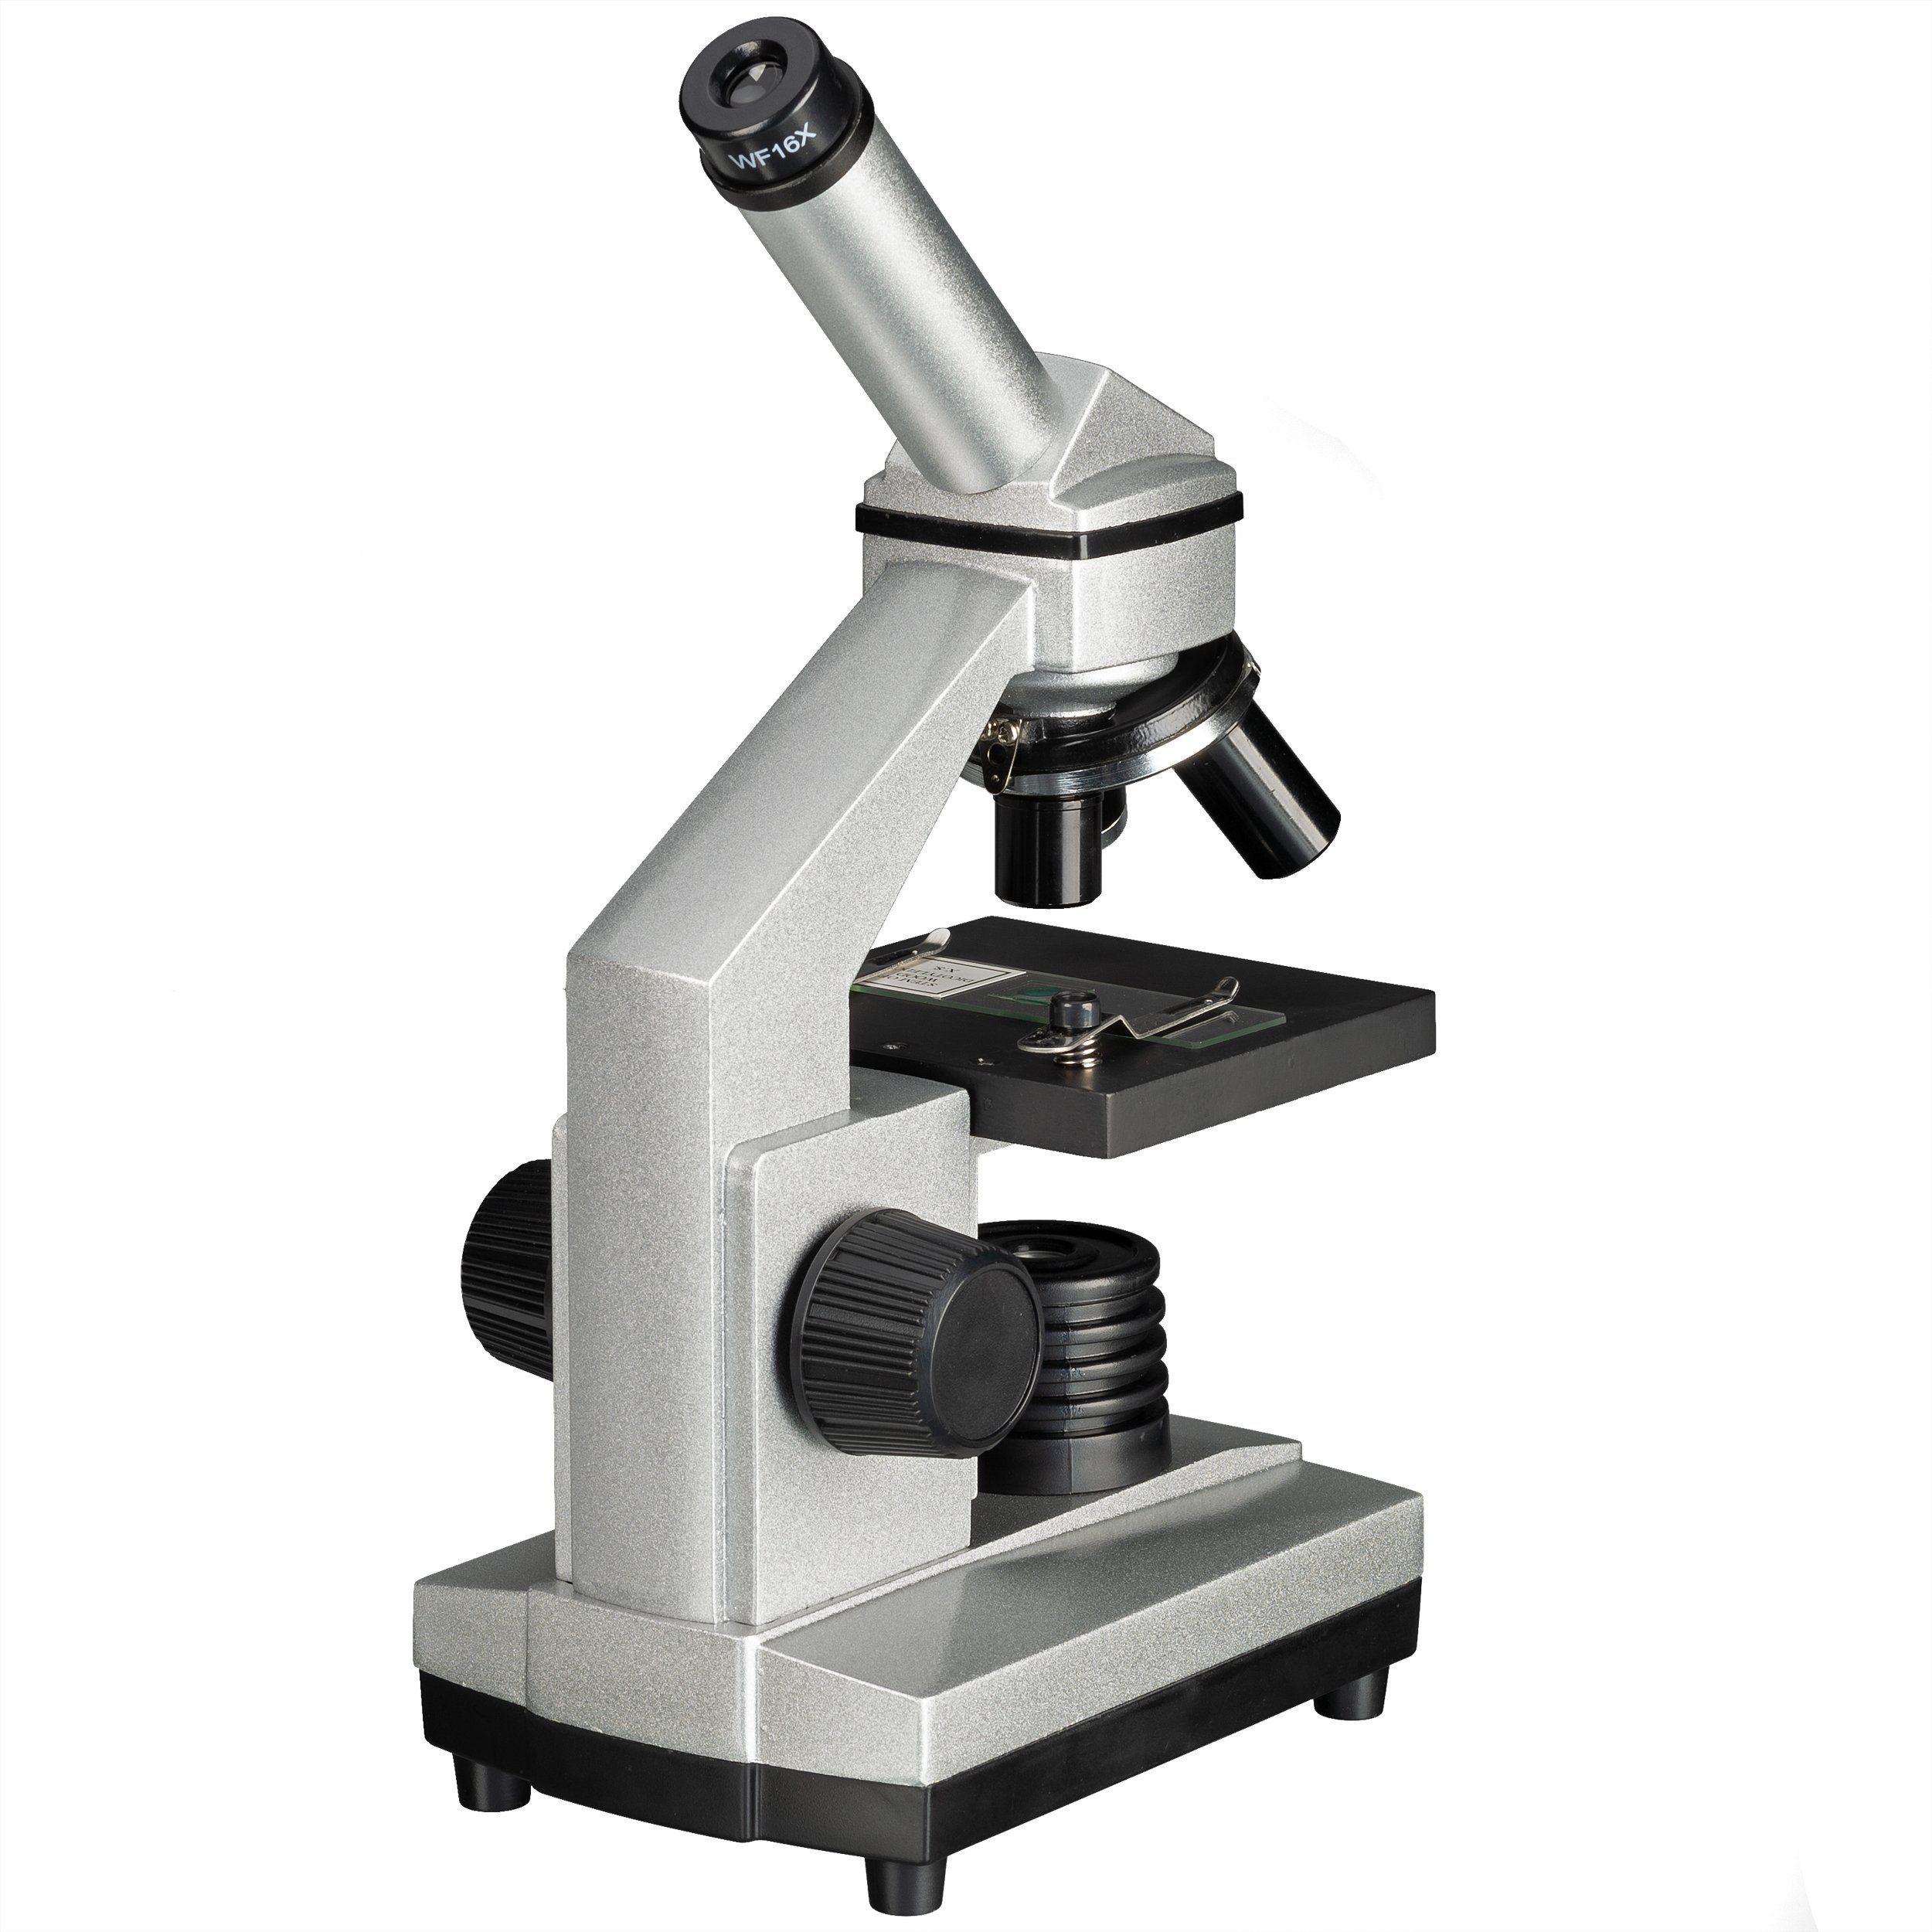 BRESSER junior »40x-1024x Mikroskop mit HD-Okularkamera« Kindermikroskop  online kaufen | OTTO